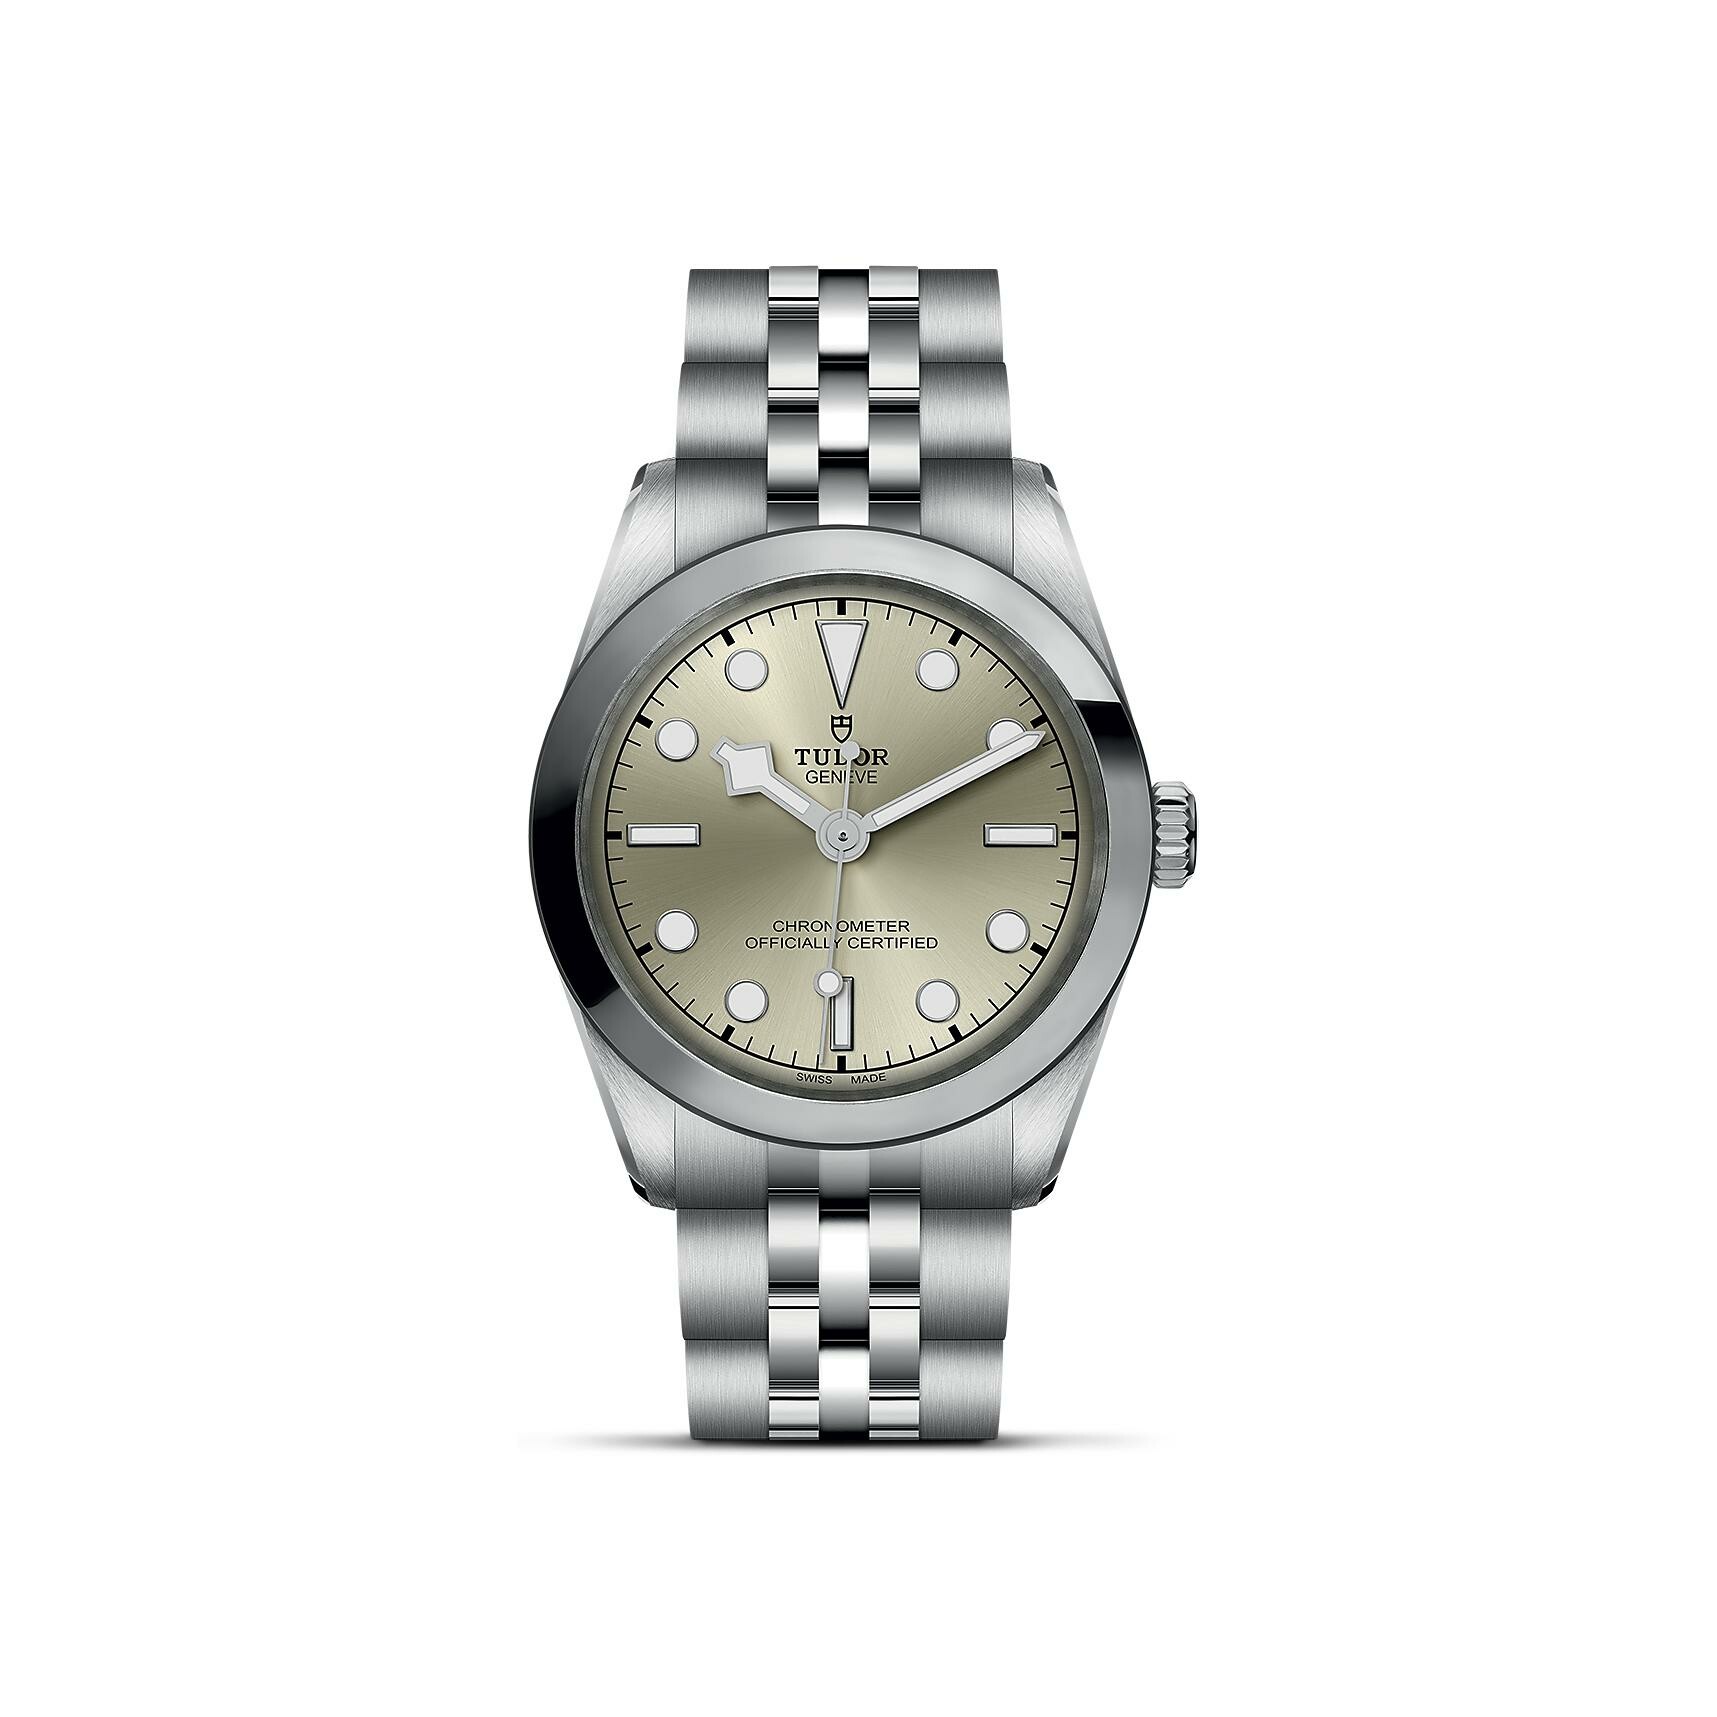 Purchase TUDOR Black Bay 31 watch, 31mm steel case, Steel bracelet